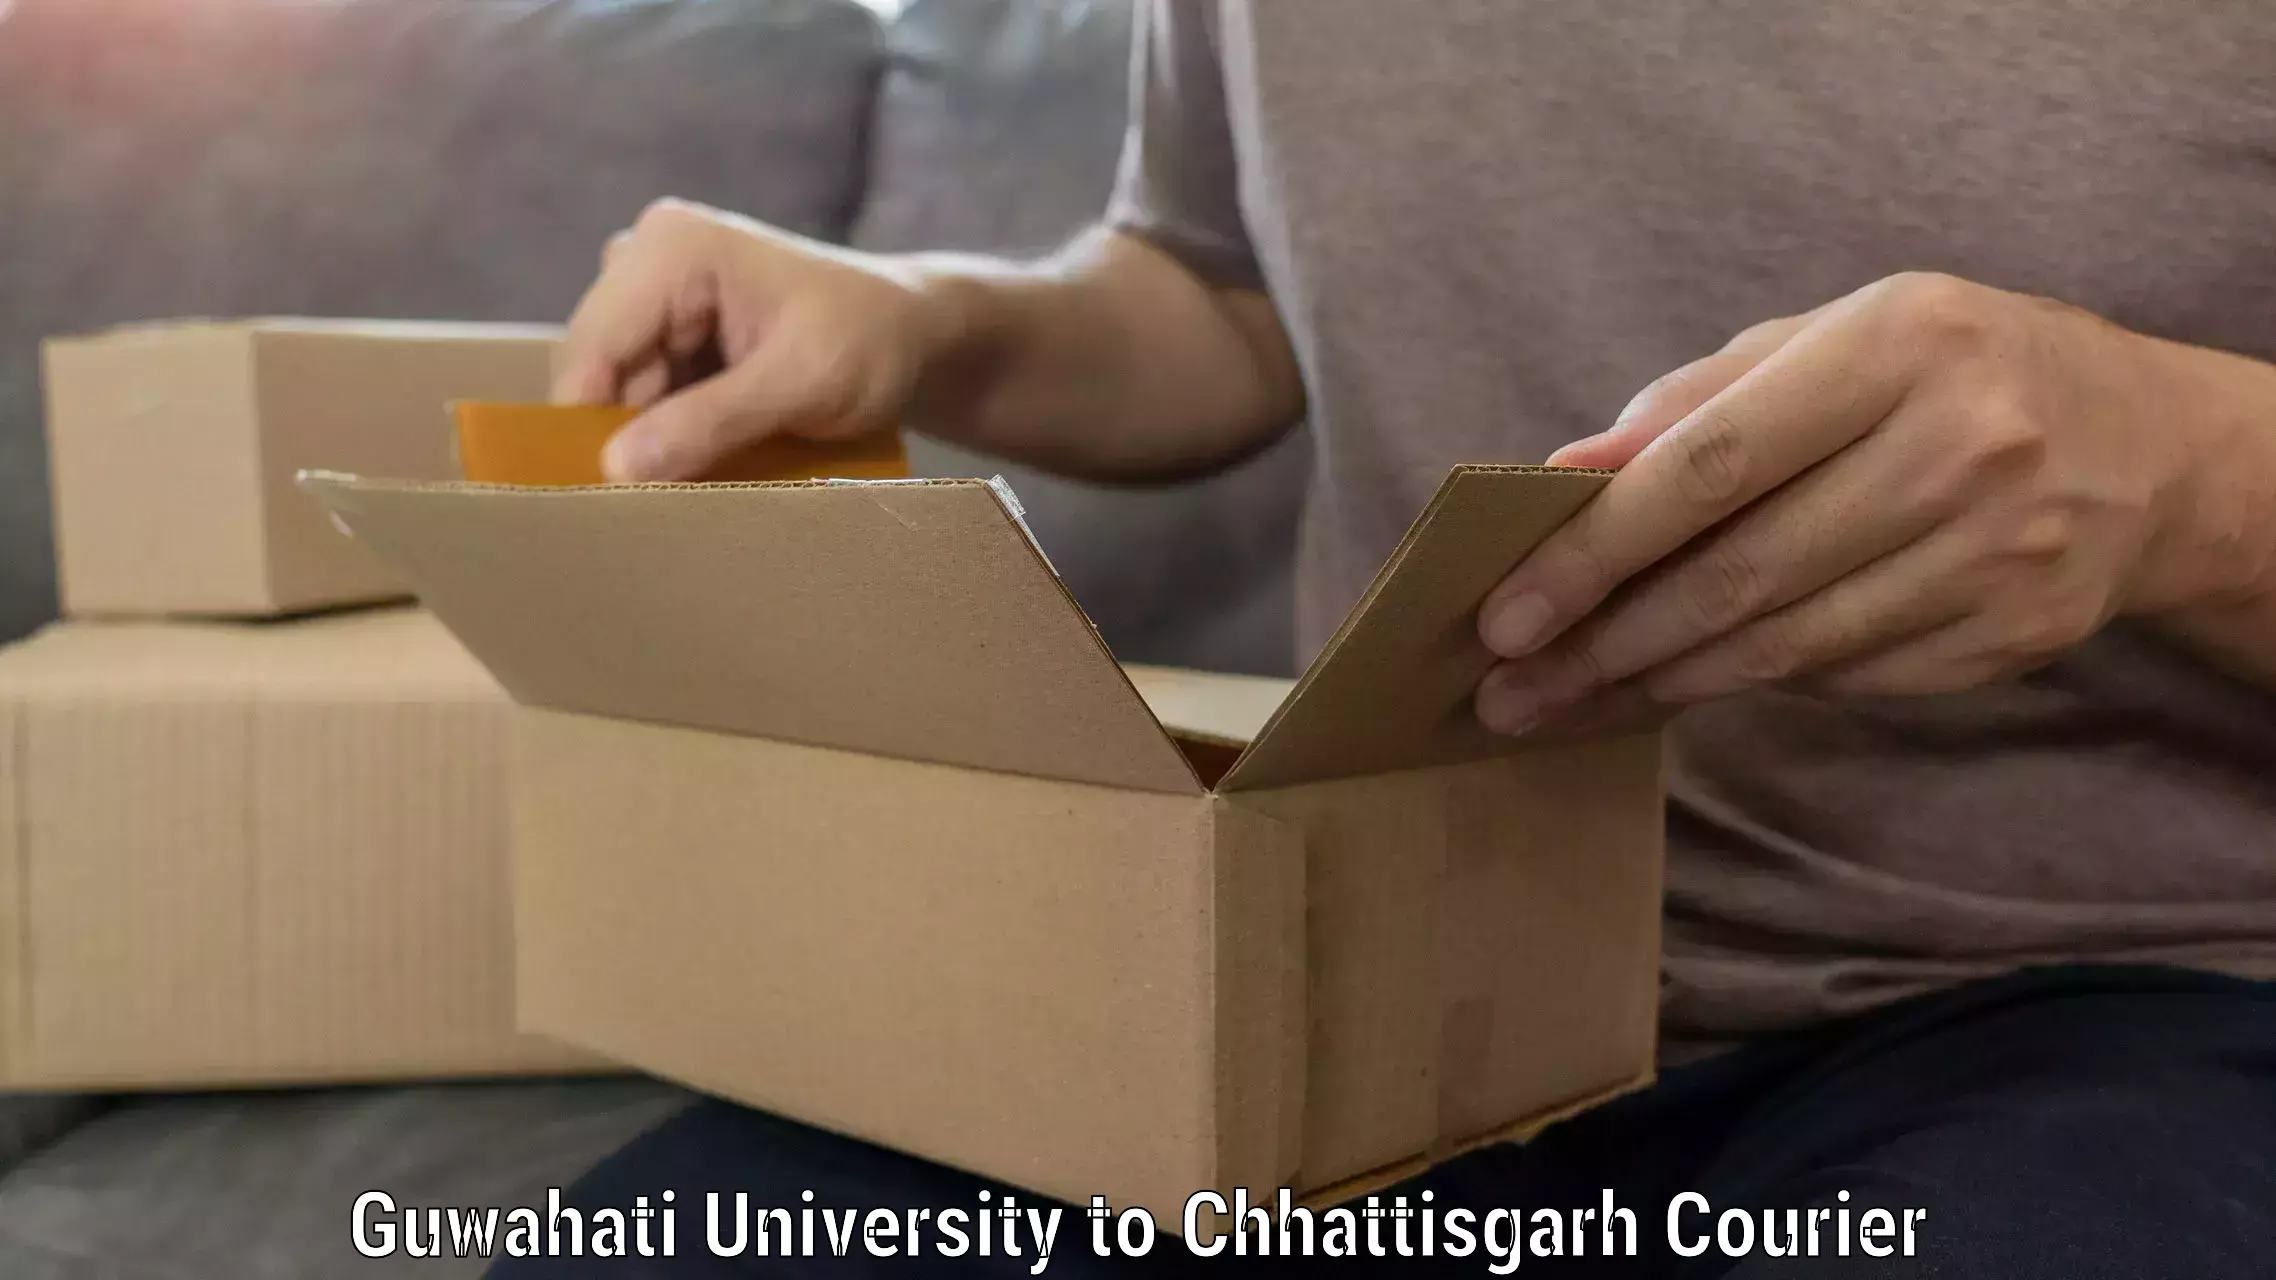 Quality furniture movers Guwahati University to Raigarh Chhattisgarh